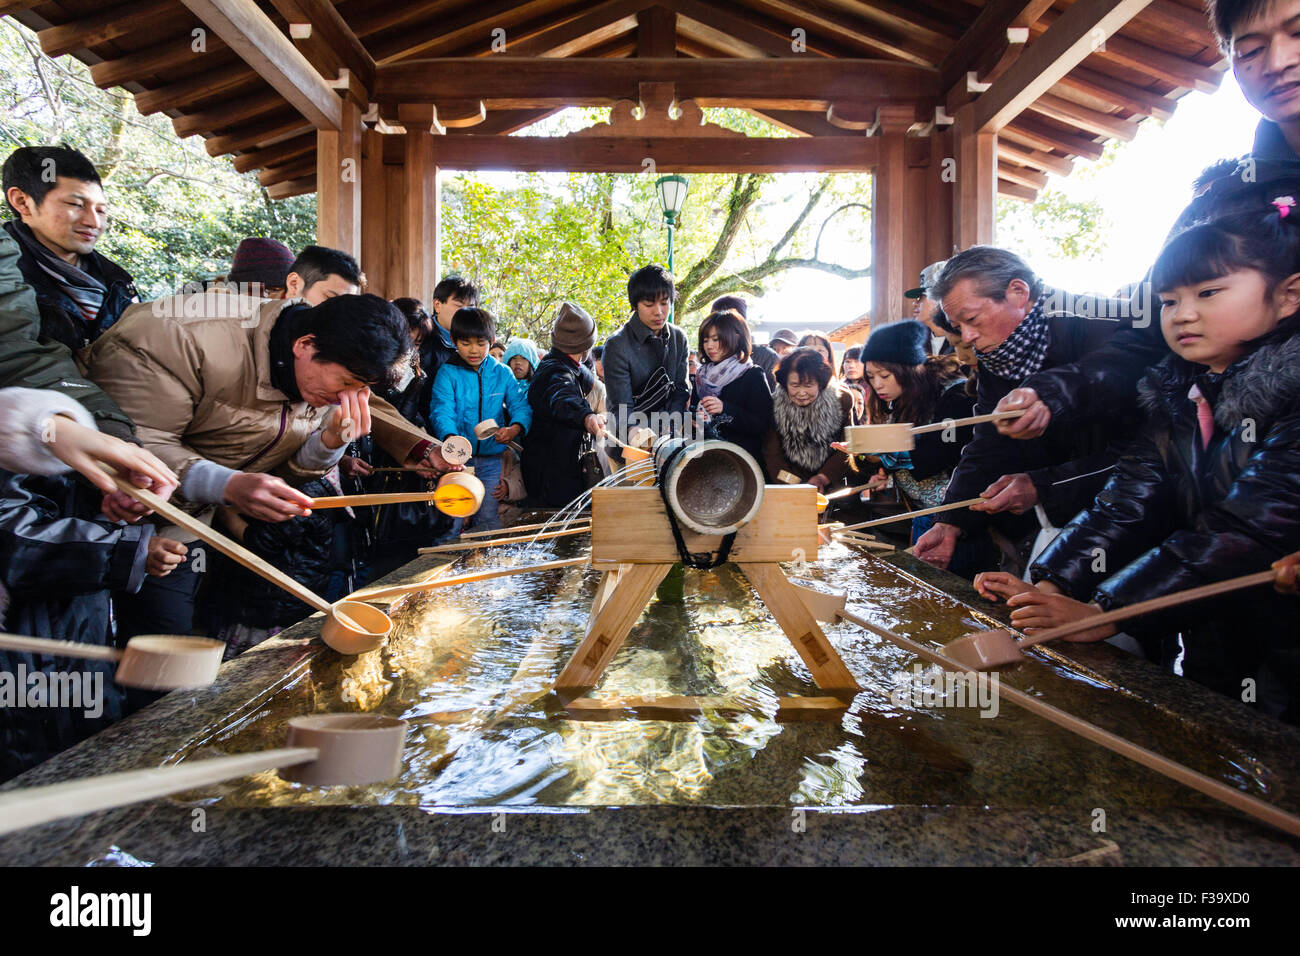 Nishinomiya sacrario scintoista a Shogatsu, Anno Nuovo. La gente accalcarsi intorno al bacino di depurazione, te-mizuya, prima di entrare nel santuario. Foto Stock